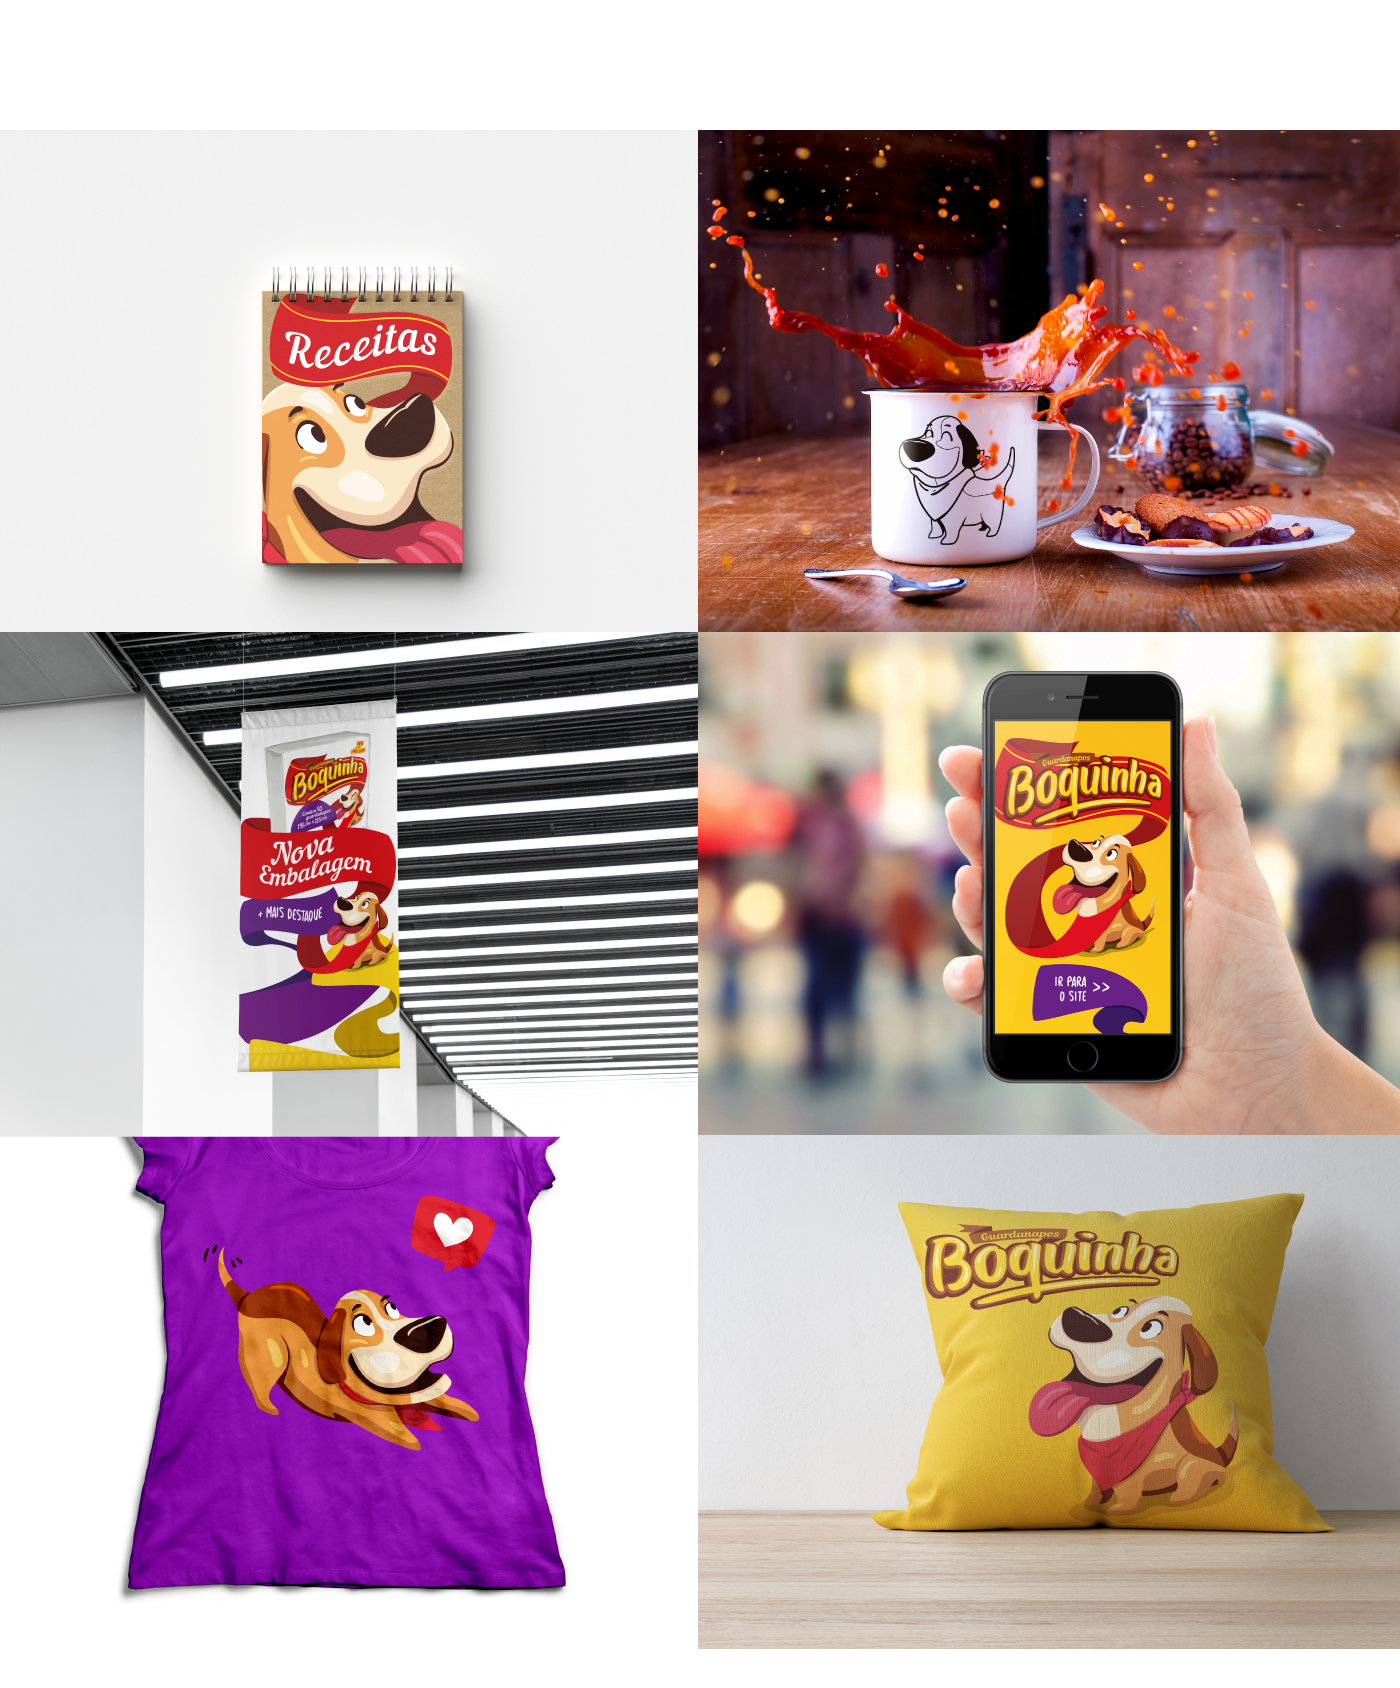 guardanapo cachorro napkin dog mascote Mascot embalagem package redesign funny